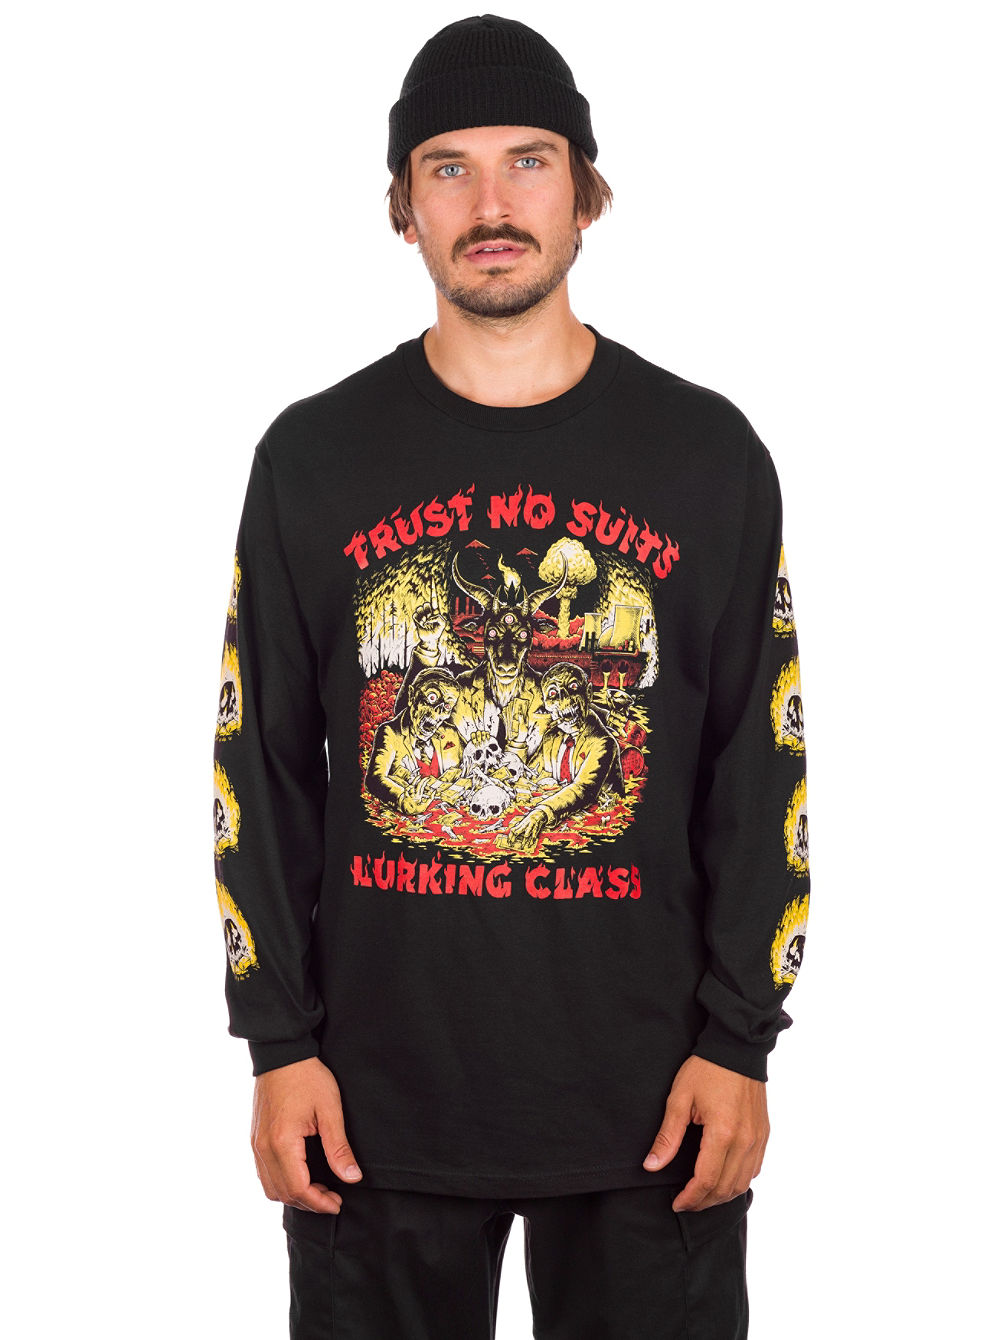 Trust No Suits x Matt Stikker Collab Long Sleeve T-Shirt